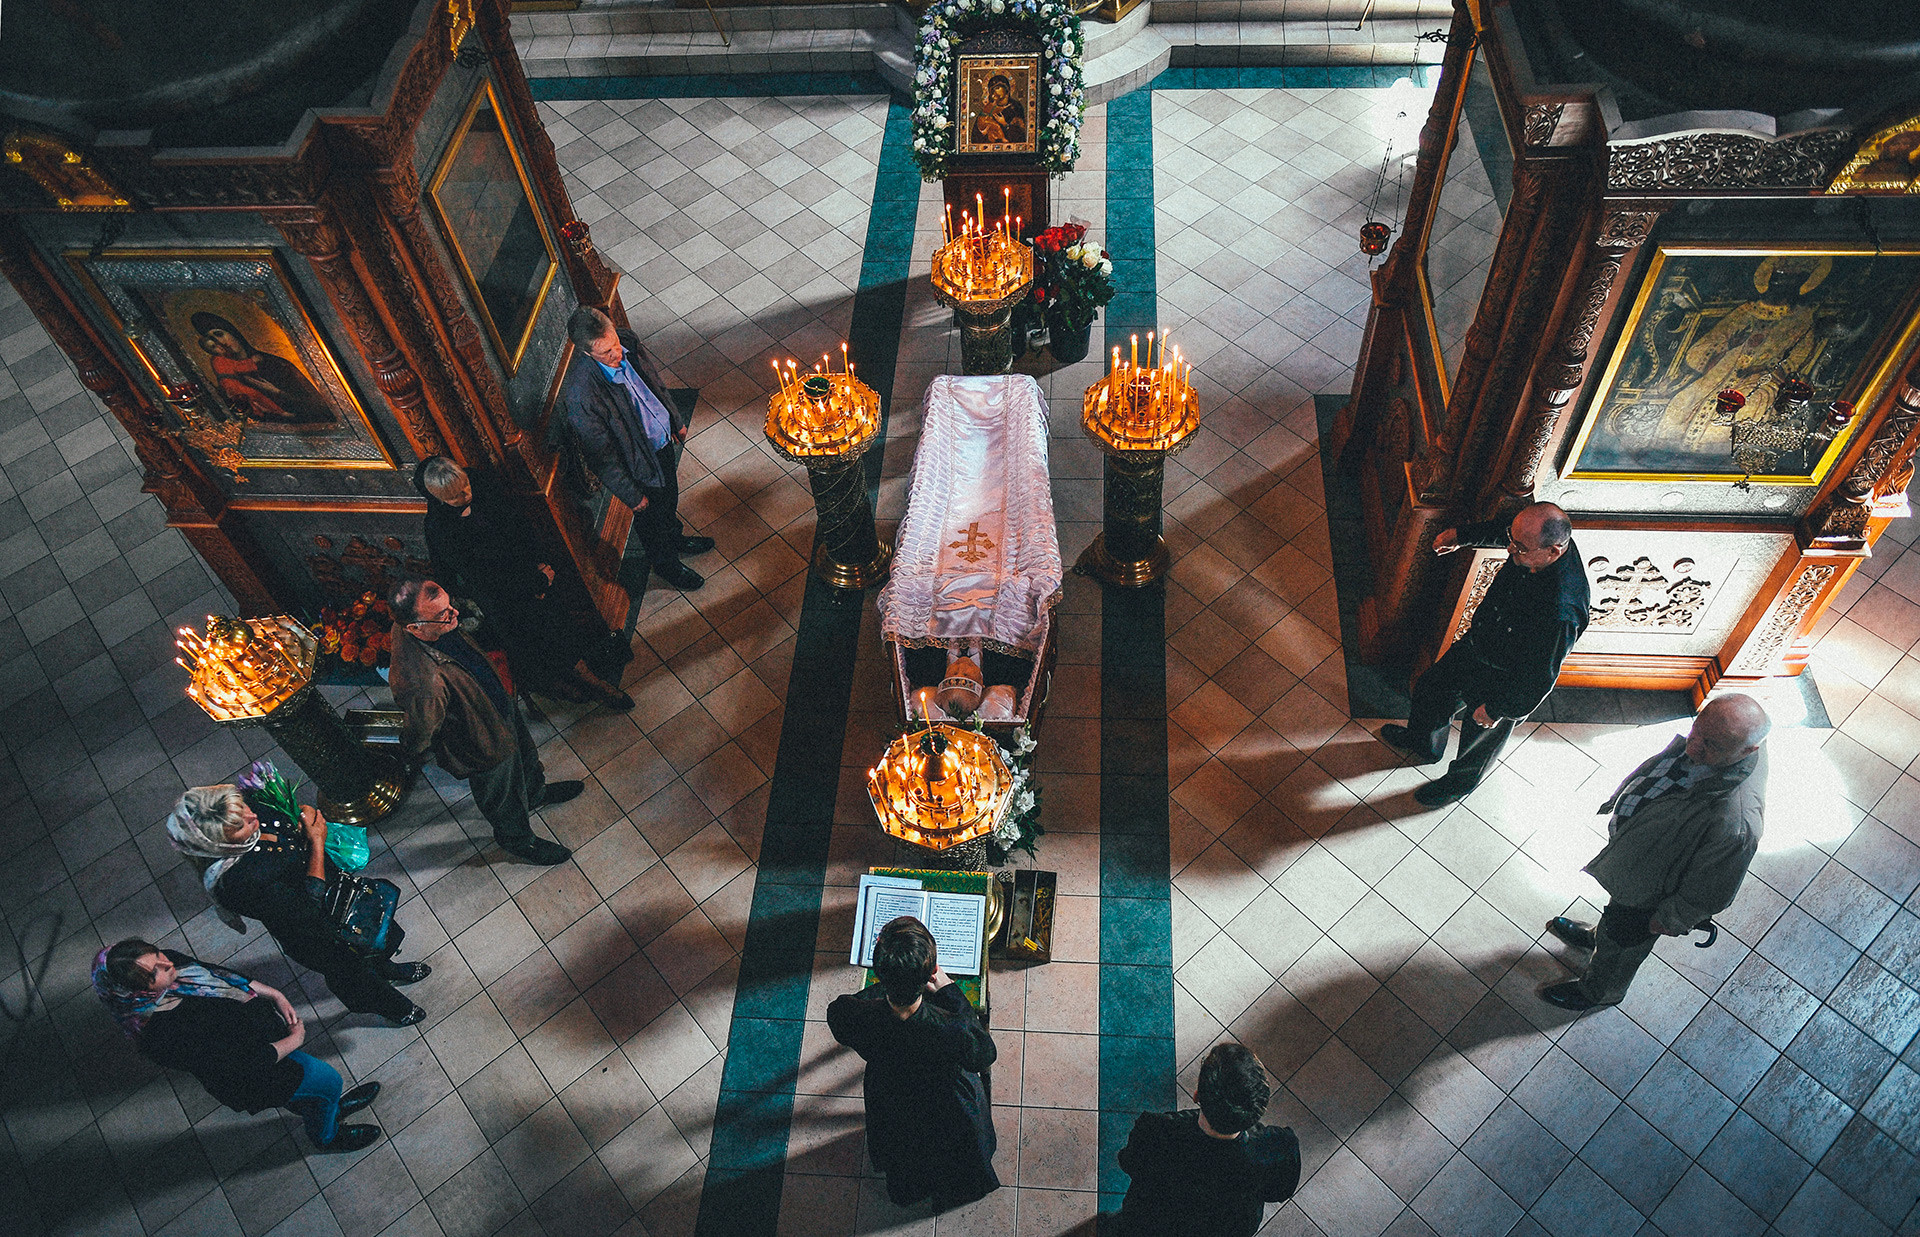 Memorial service in a Russian church